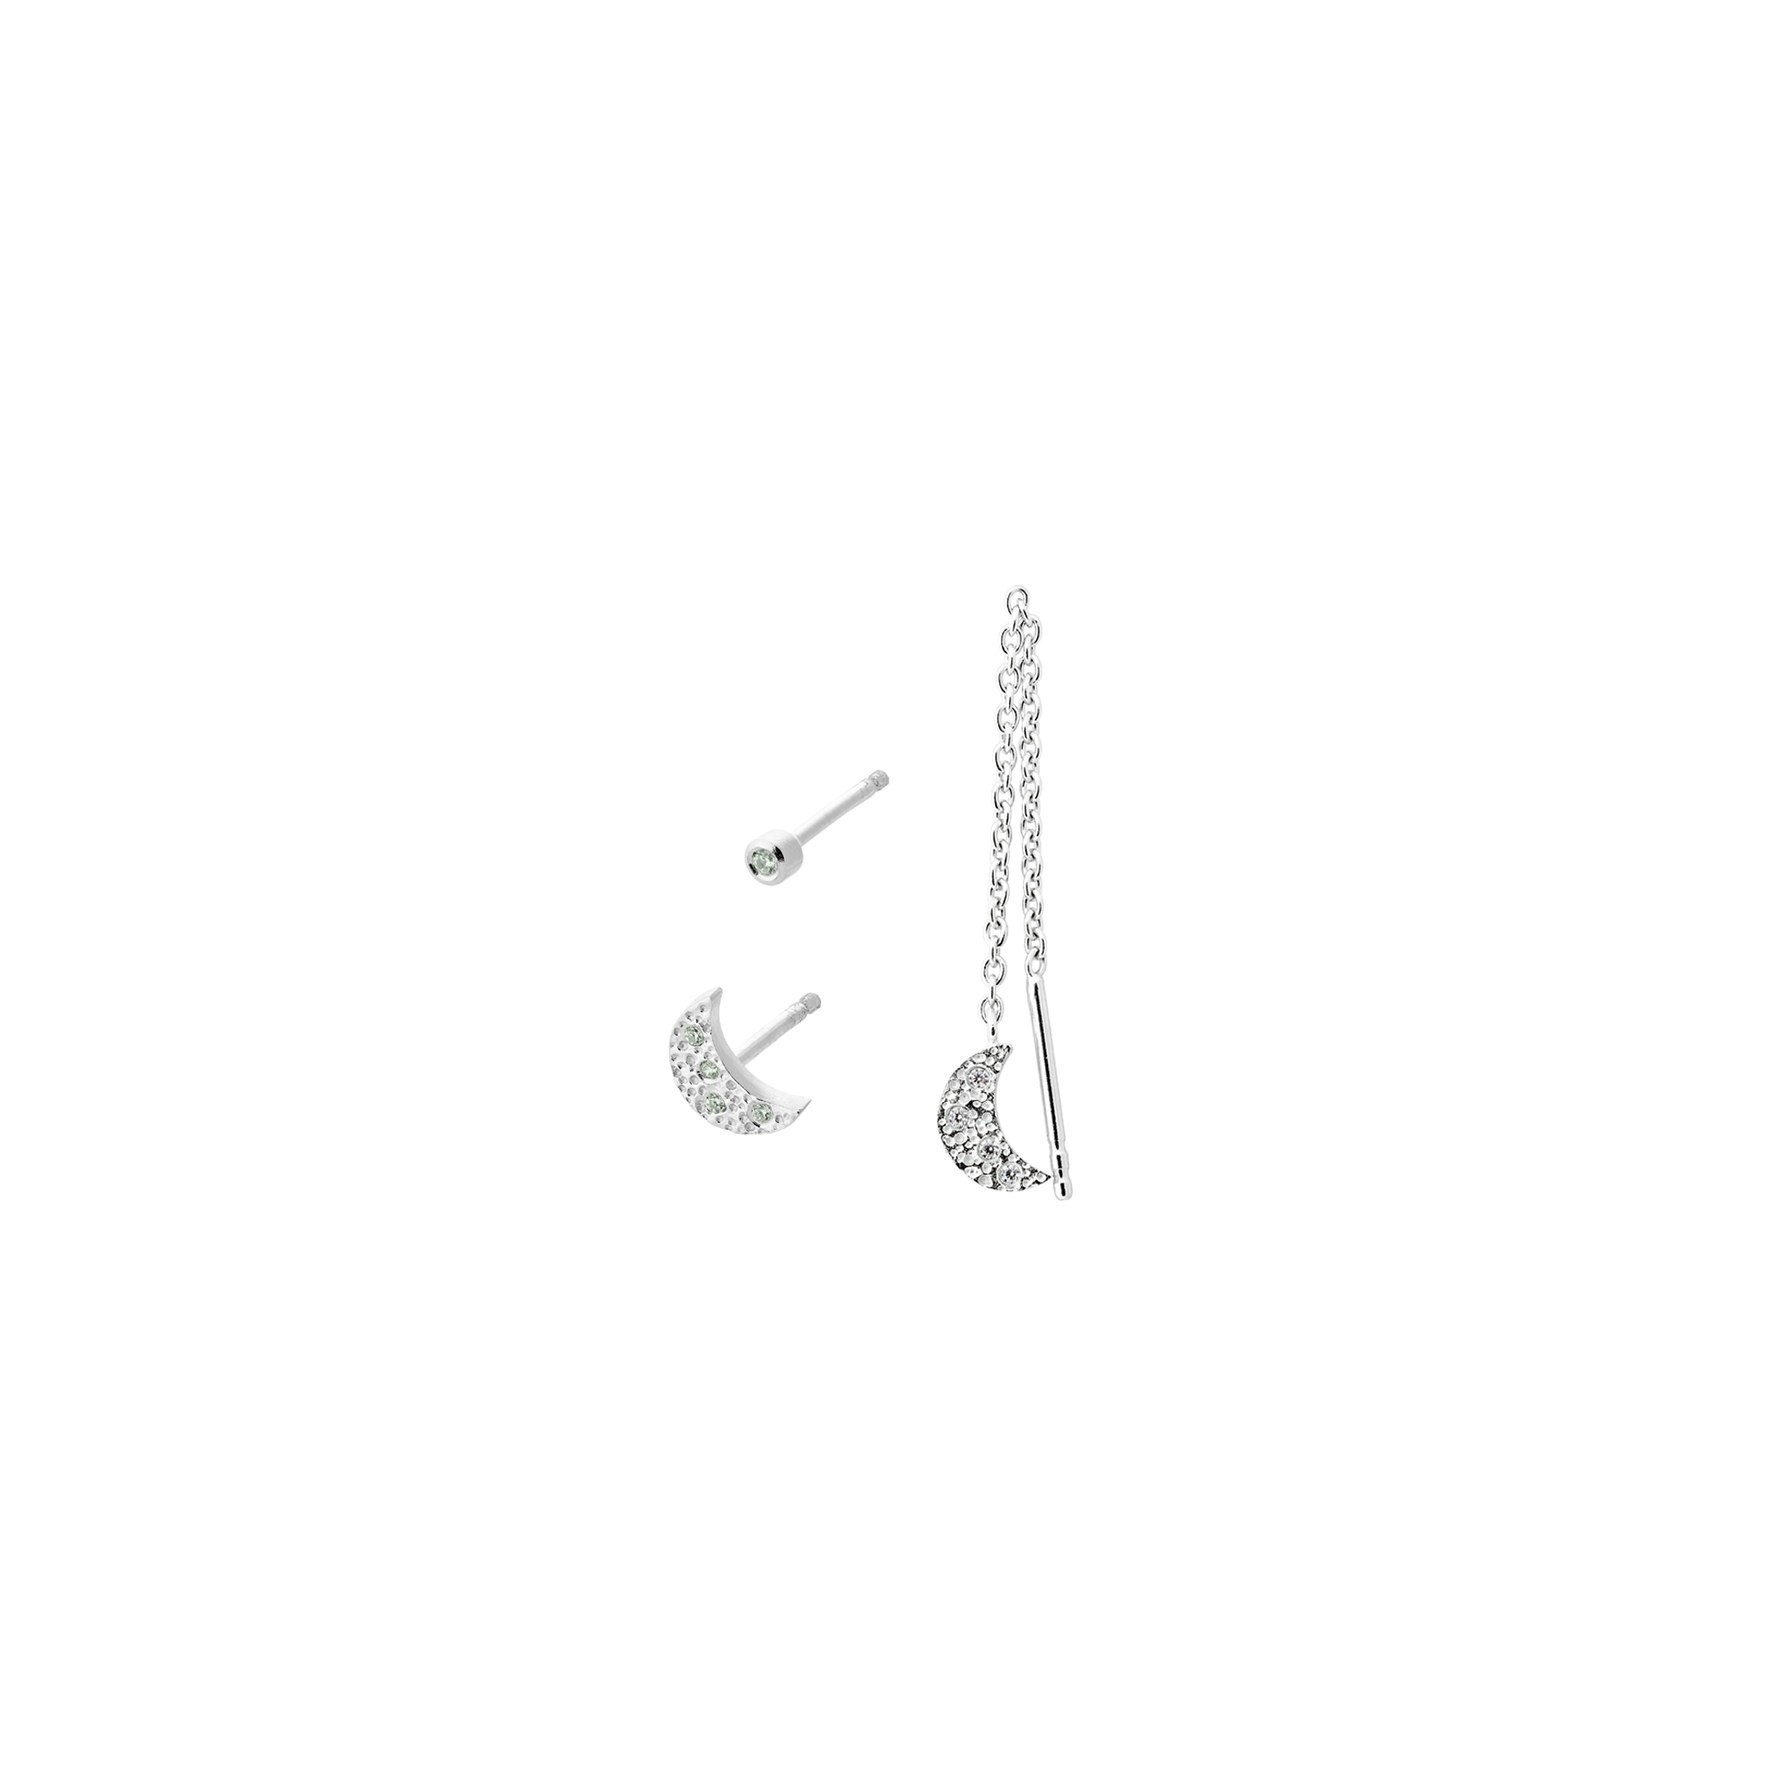 Moonlight Earring Box fra Pernille Corydon i Sølv Sterling 925